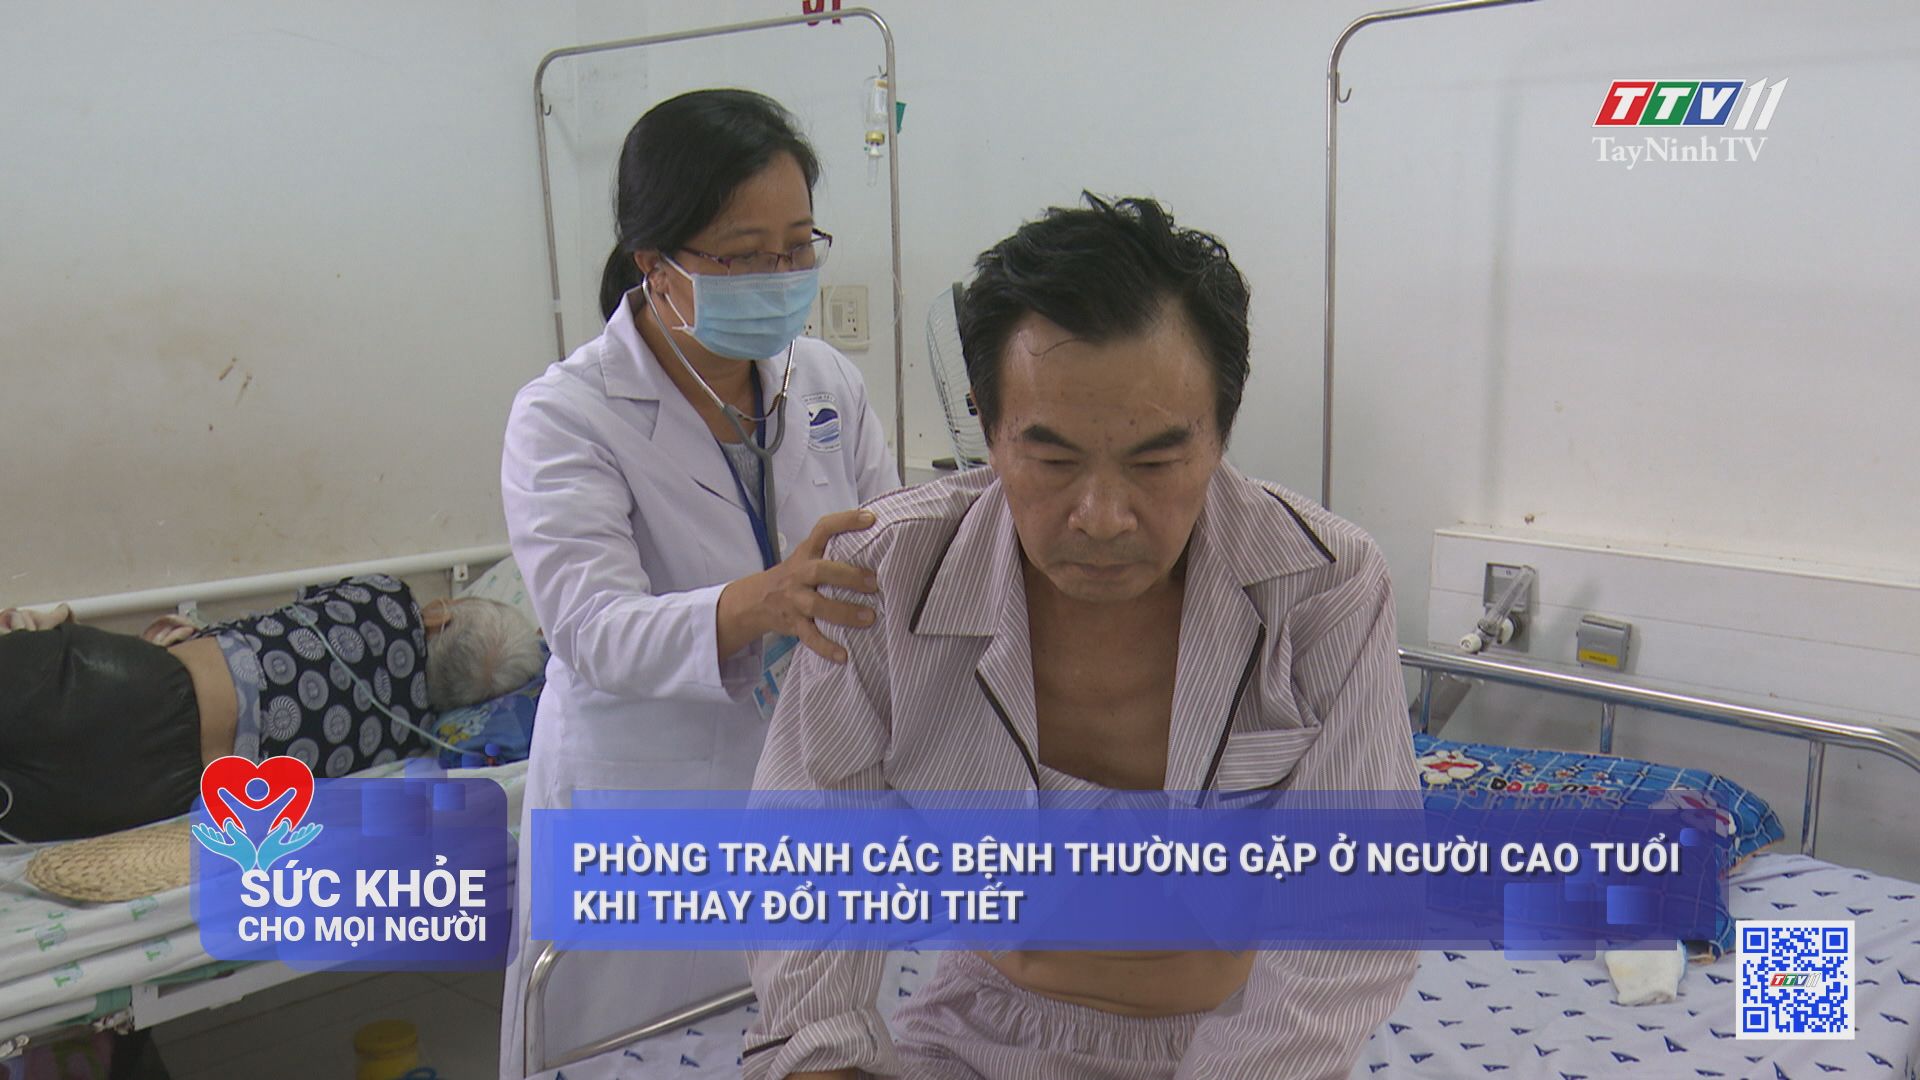 Nâng cao chất lượng khám chữa bệnh tại các cơ sở y tế công lập | SỨC KHỎE CHO MỌI NGƯỜI | TayNinhTV 